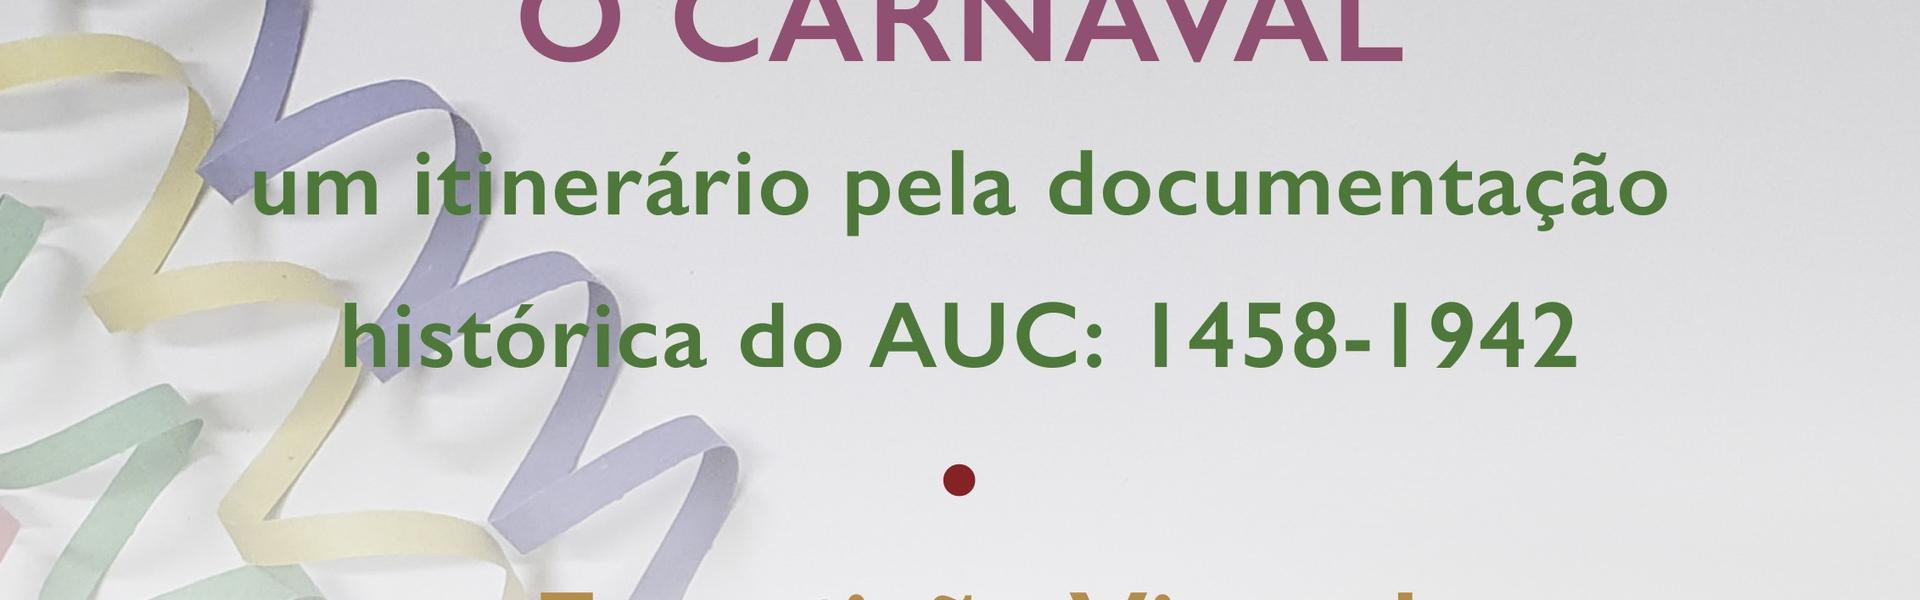 O Carnaval: um itinerário pela documentação histórica do AUC (1458-1942)  